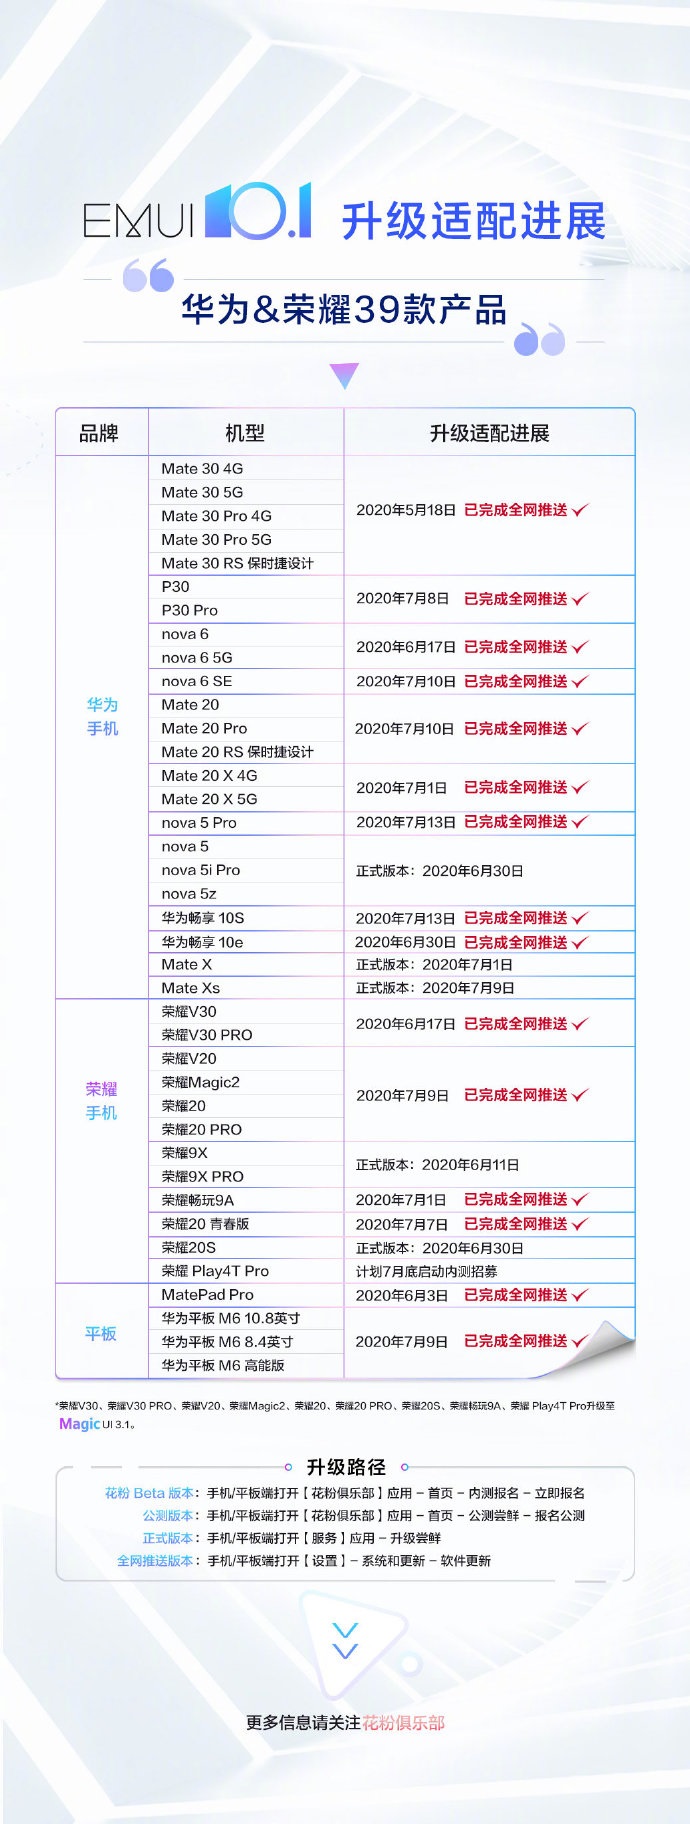 华为 / 荣耀 30 款产品已经完成 EMUI 10.1 全网推送